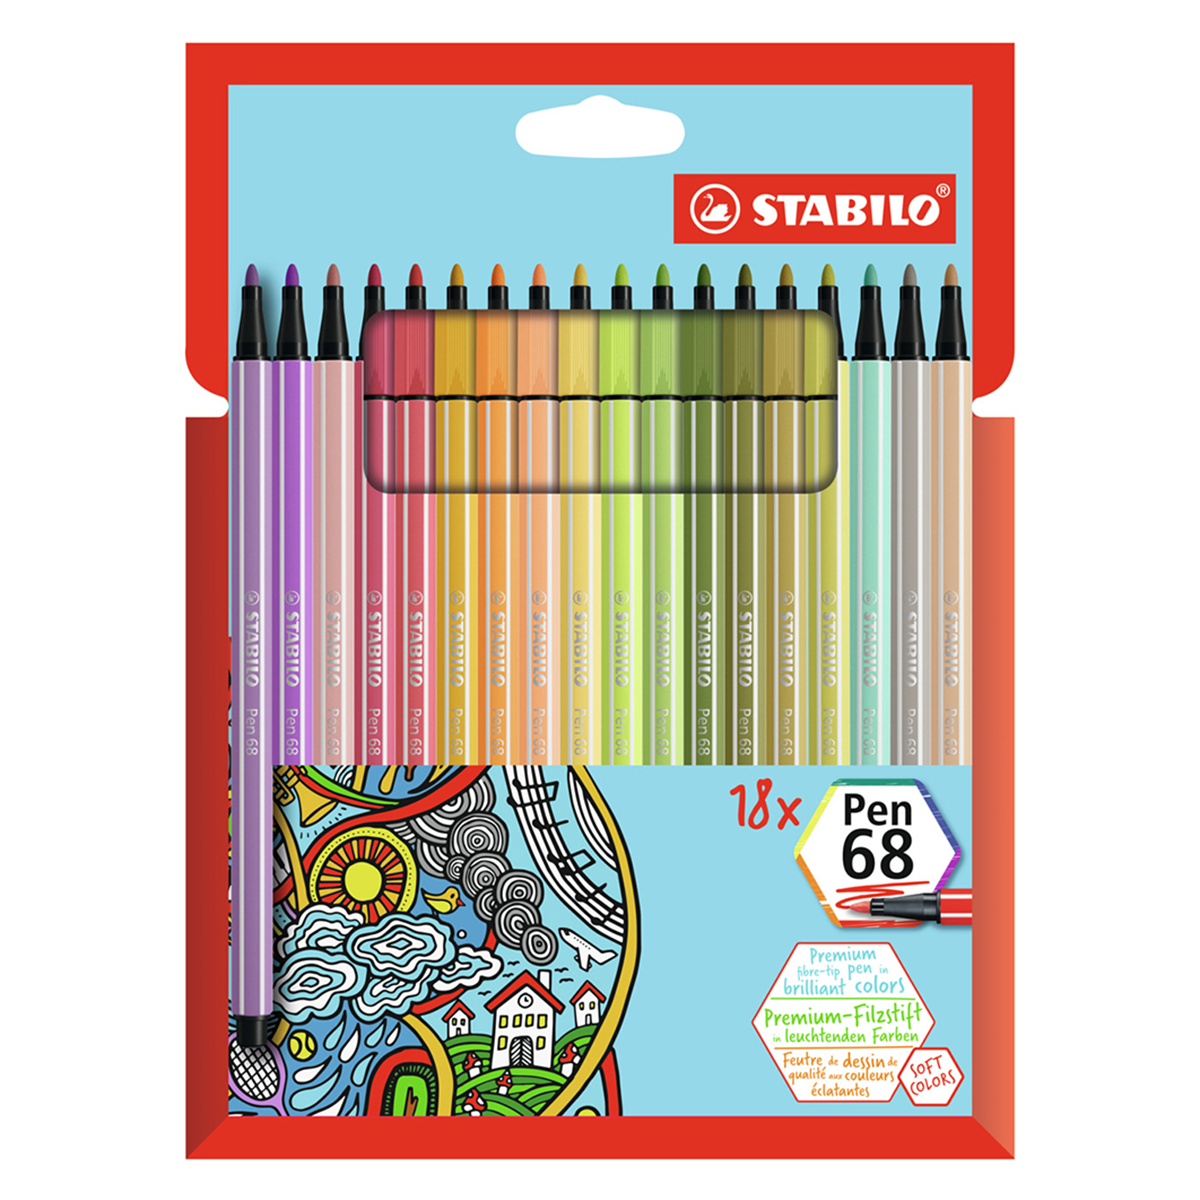 Premium felt-tip pen STABILO Pen 68 brush - box of 30 ARTY